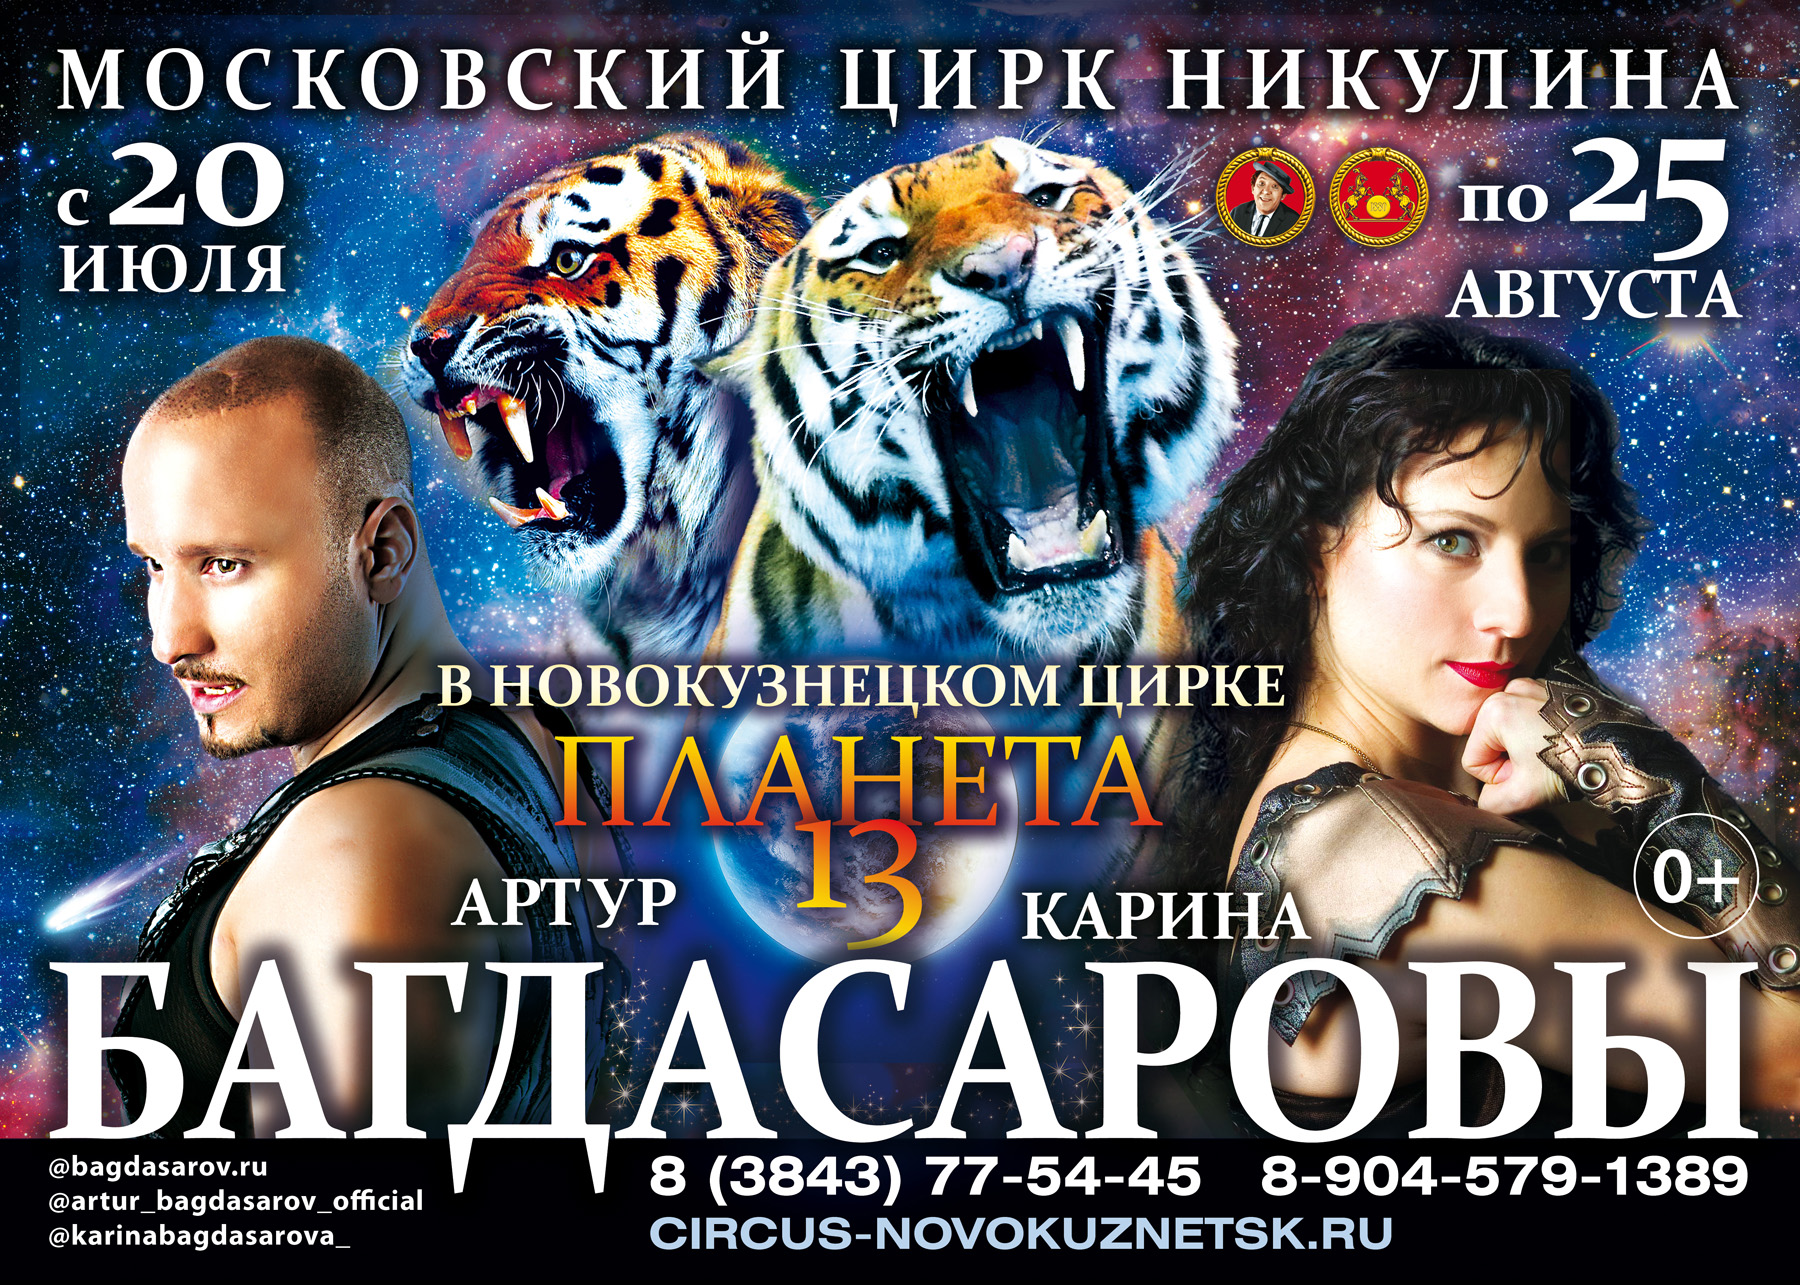 Московский цирк Никулина в Новокузнецке с 20 июля по 25 августа